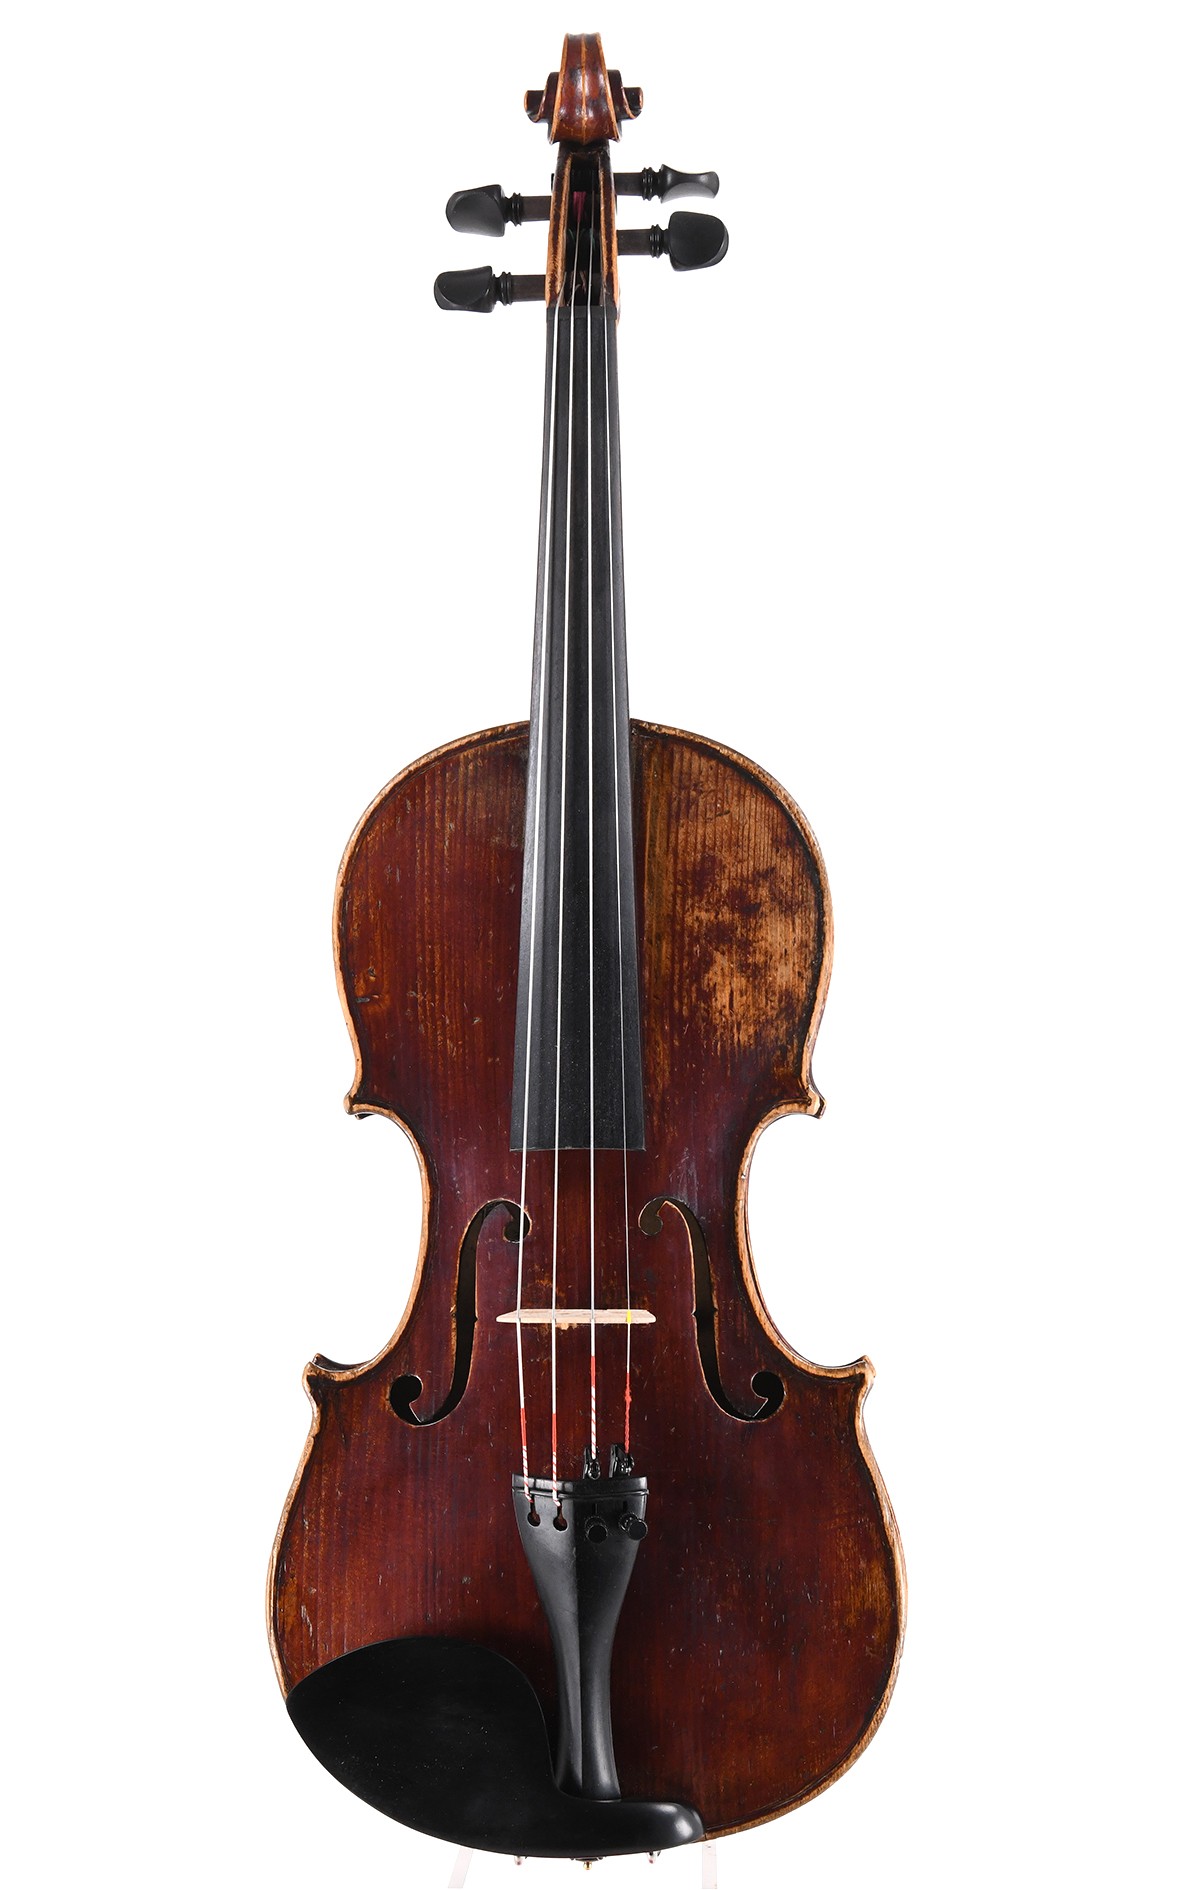 Neuner & Hornsteiner 7/8 violin